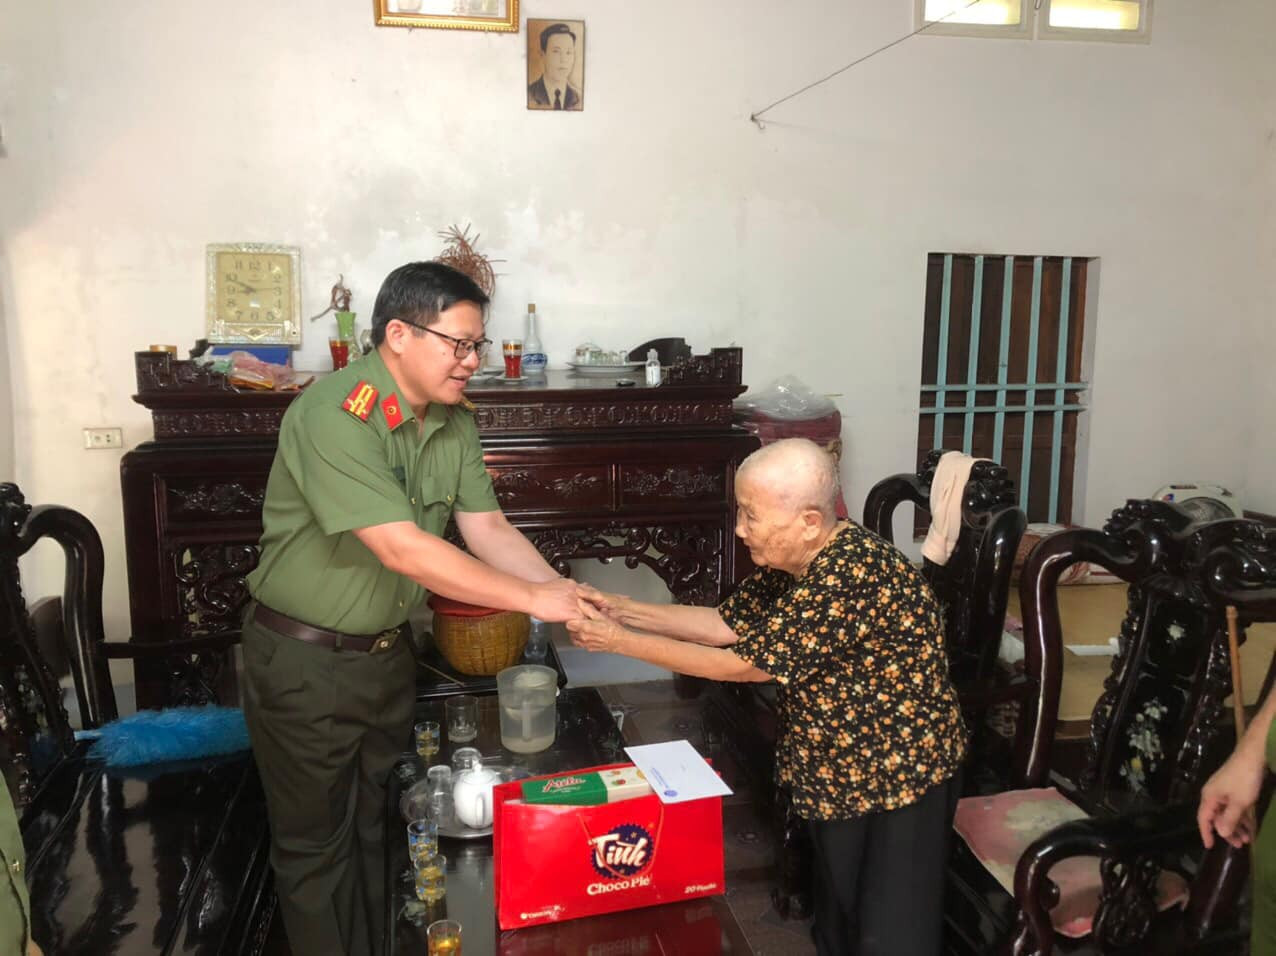 Công an huyện Thanh Thủy (Phú Thọ): Giữ bình yên trong lòng dân